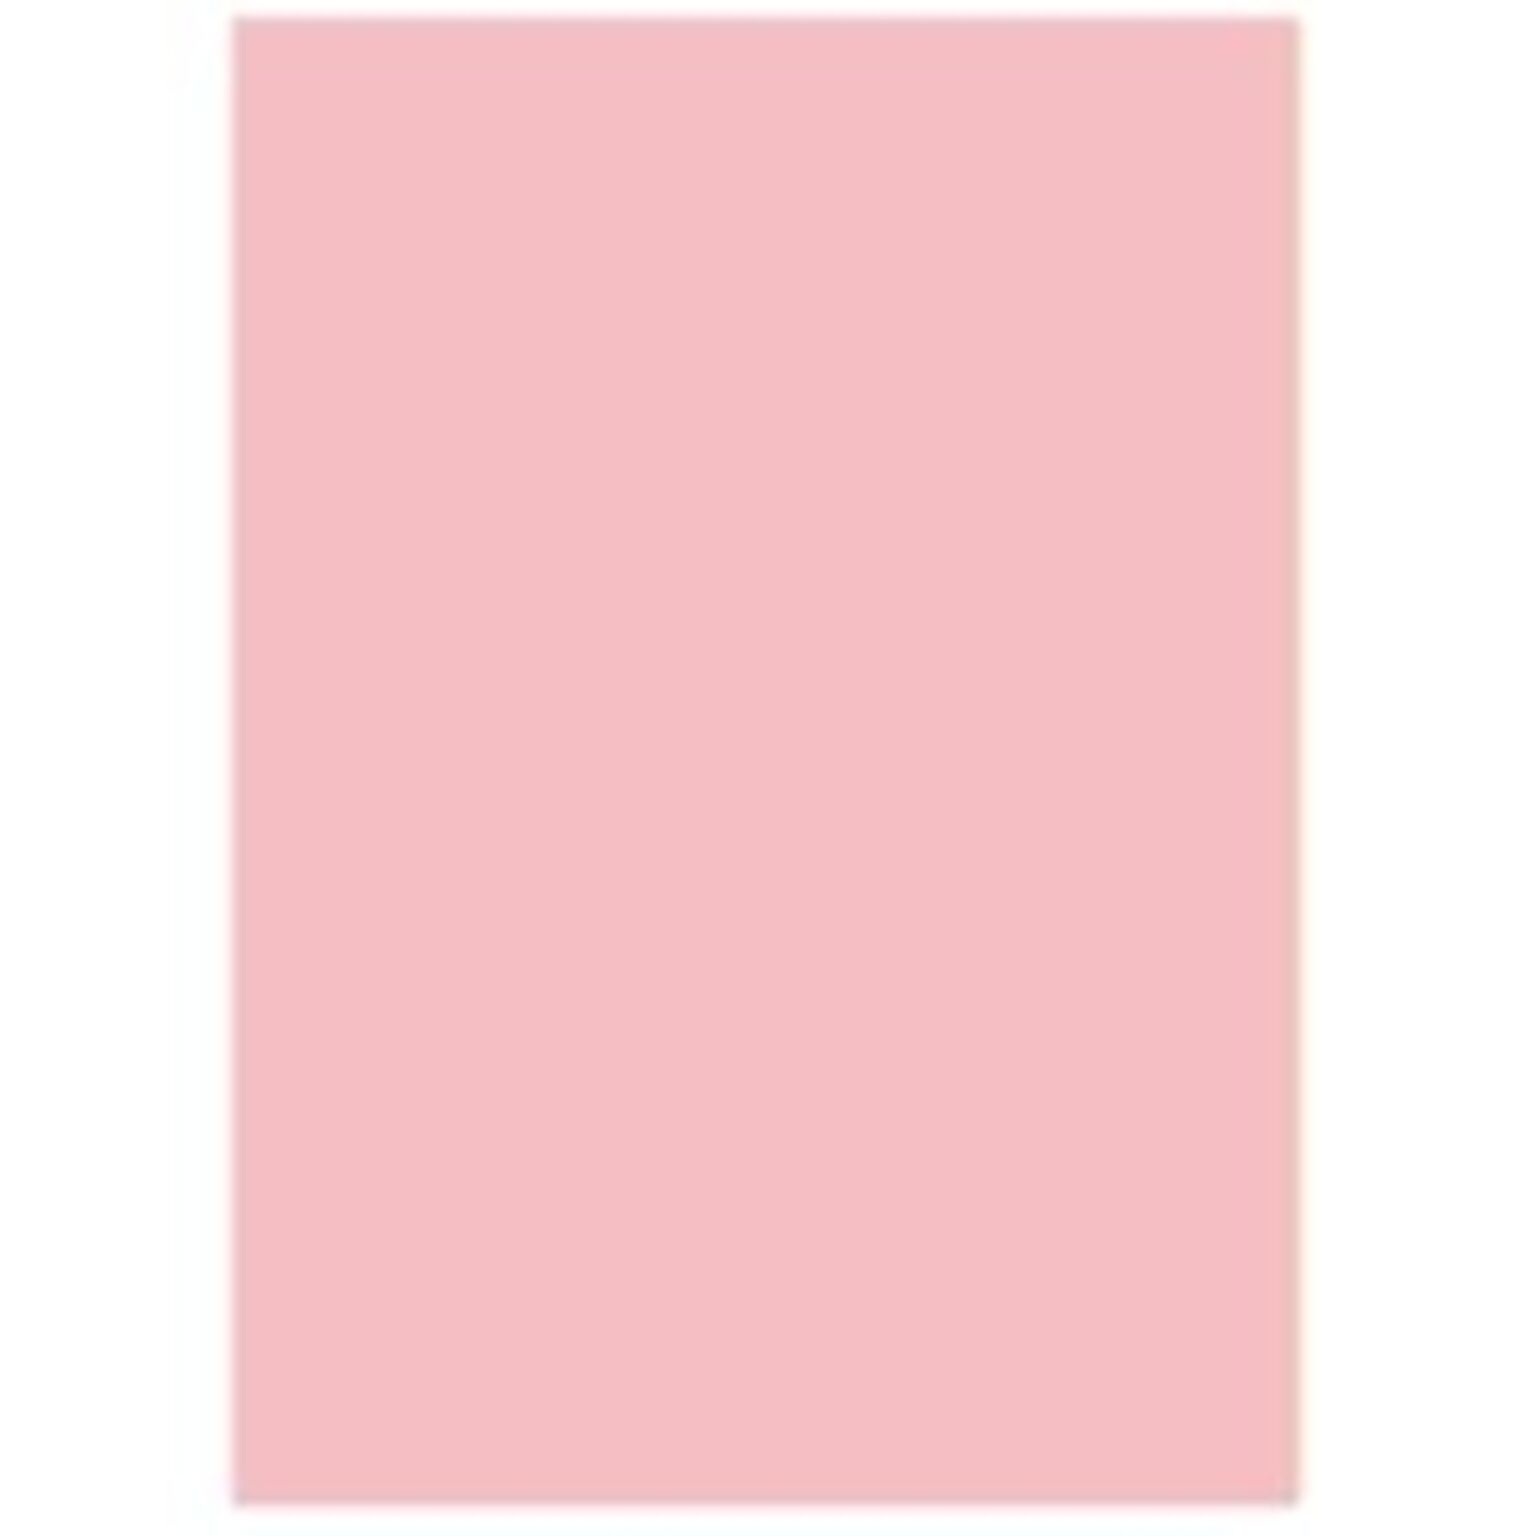 業務用5セット) 北越製紙 カラーペーパー/リサイクルコピー用紙 【A5 500枚×10冊】 日本製 ピンク 通販 RoomClipショッピング